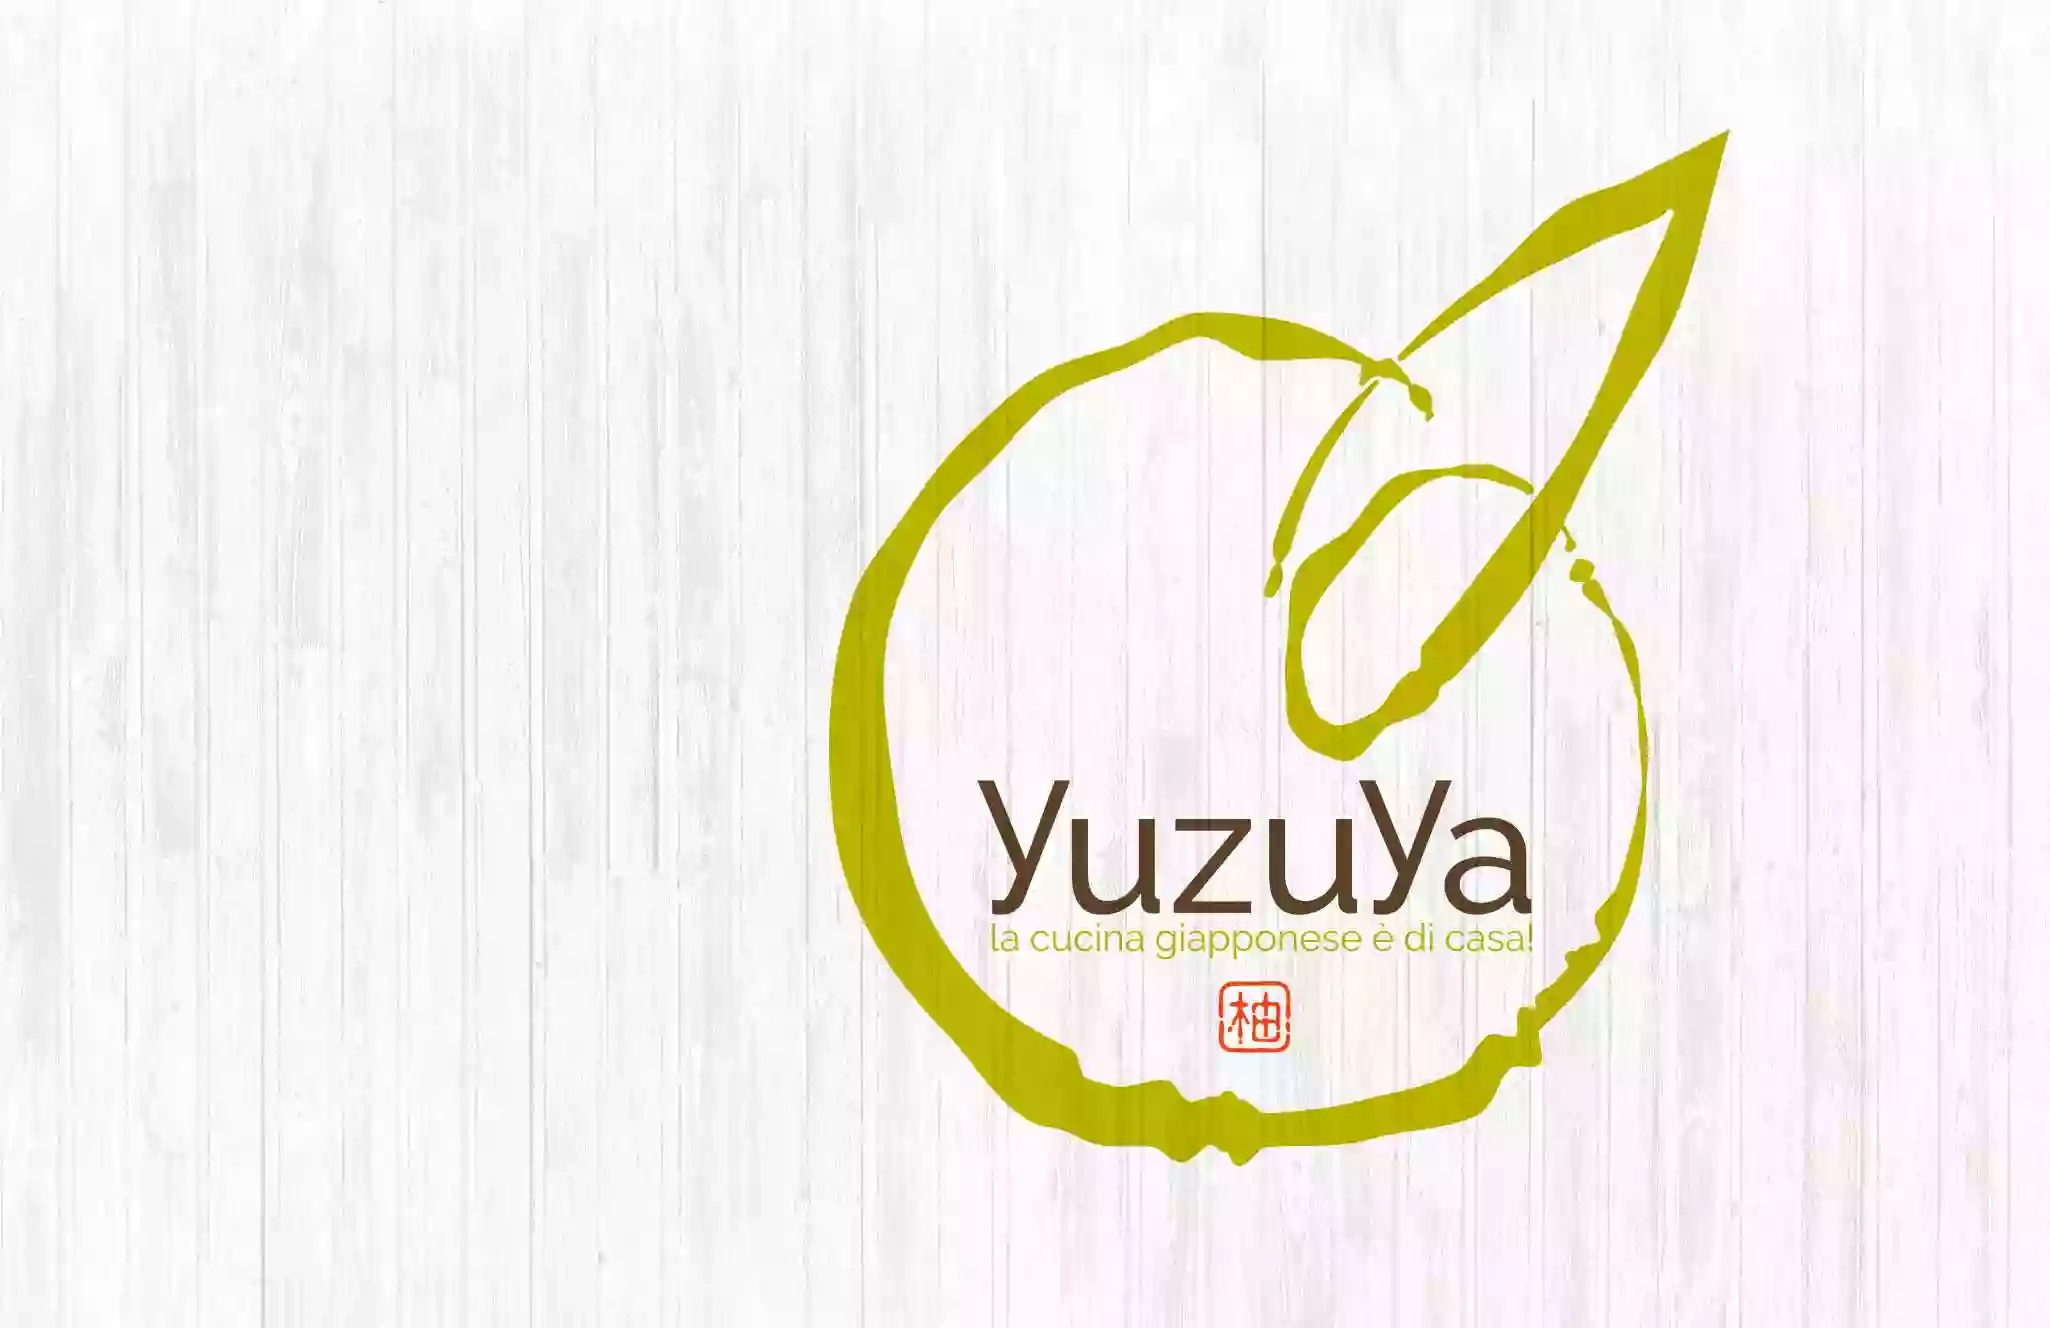 Yuzuya